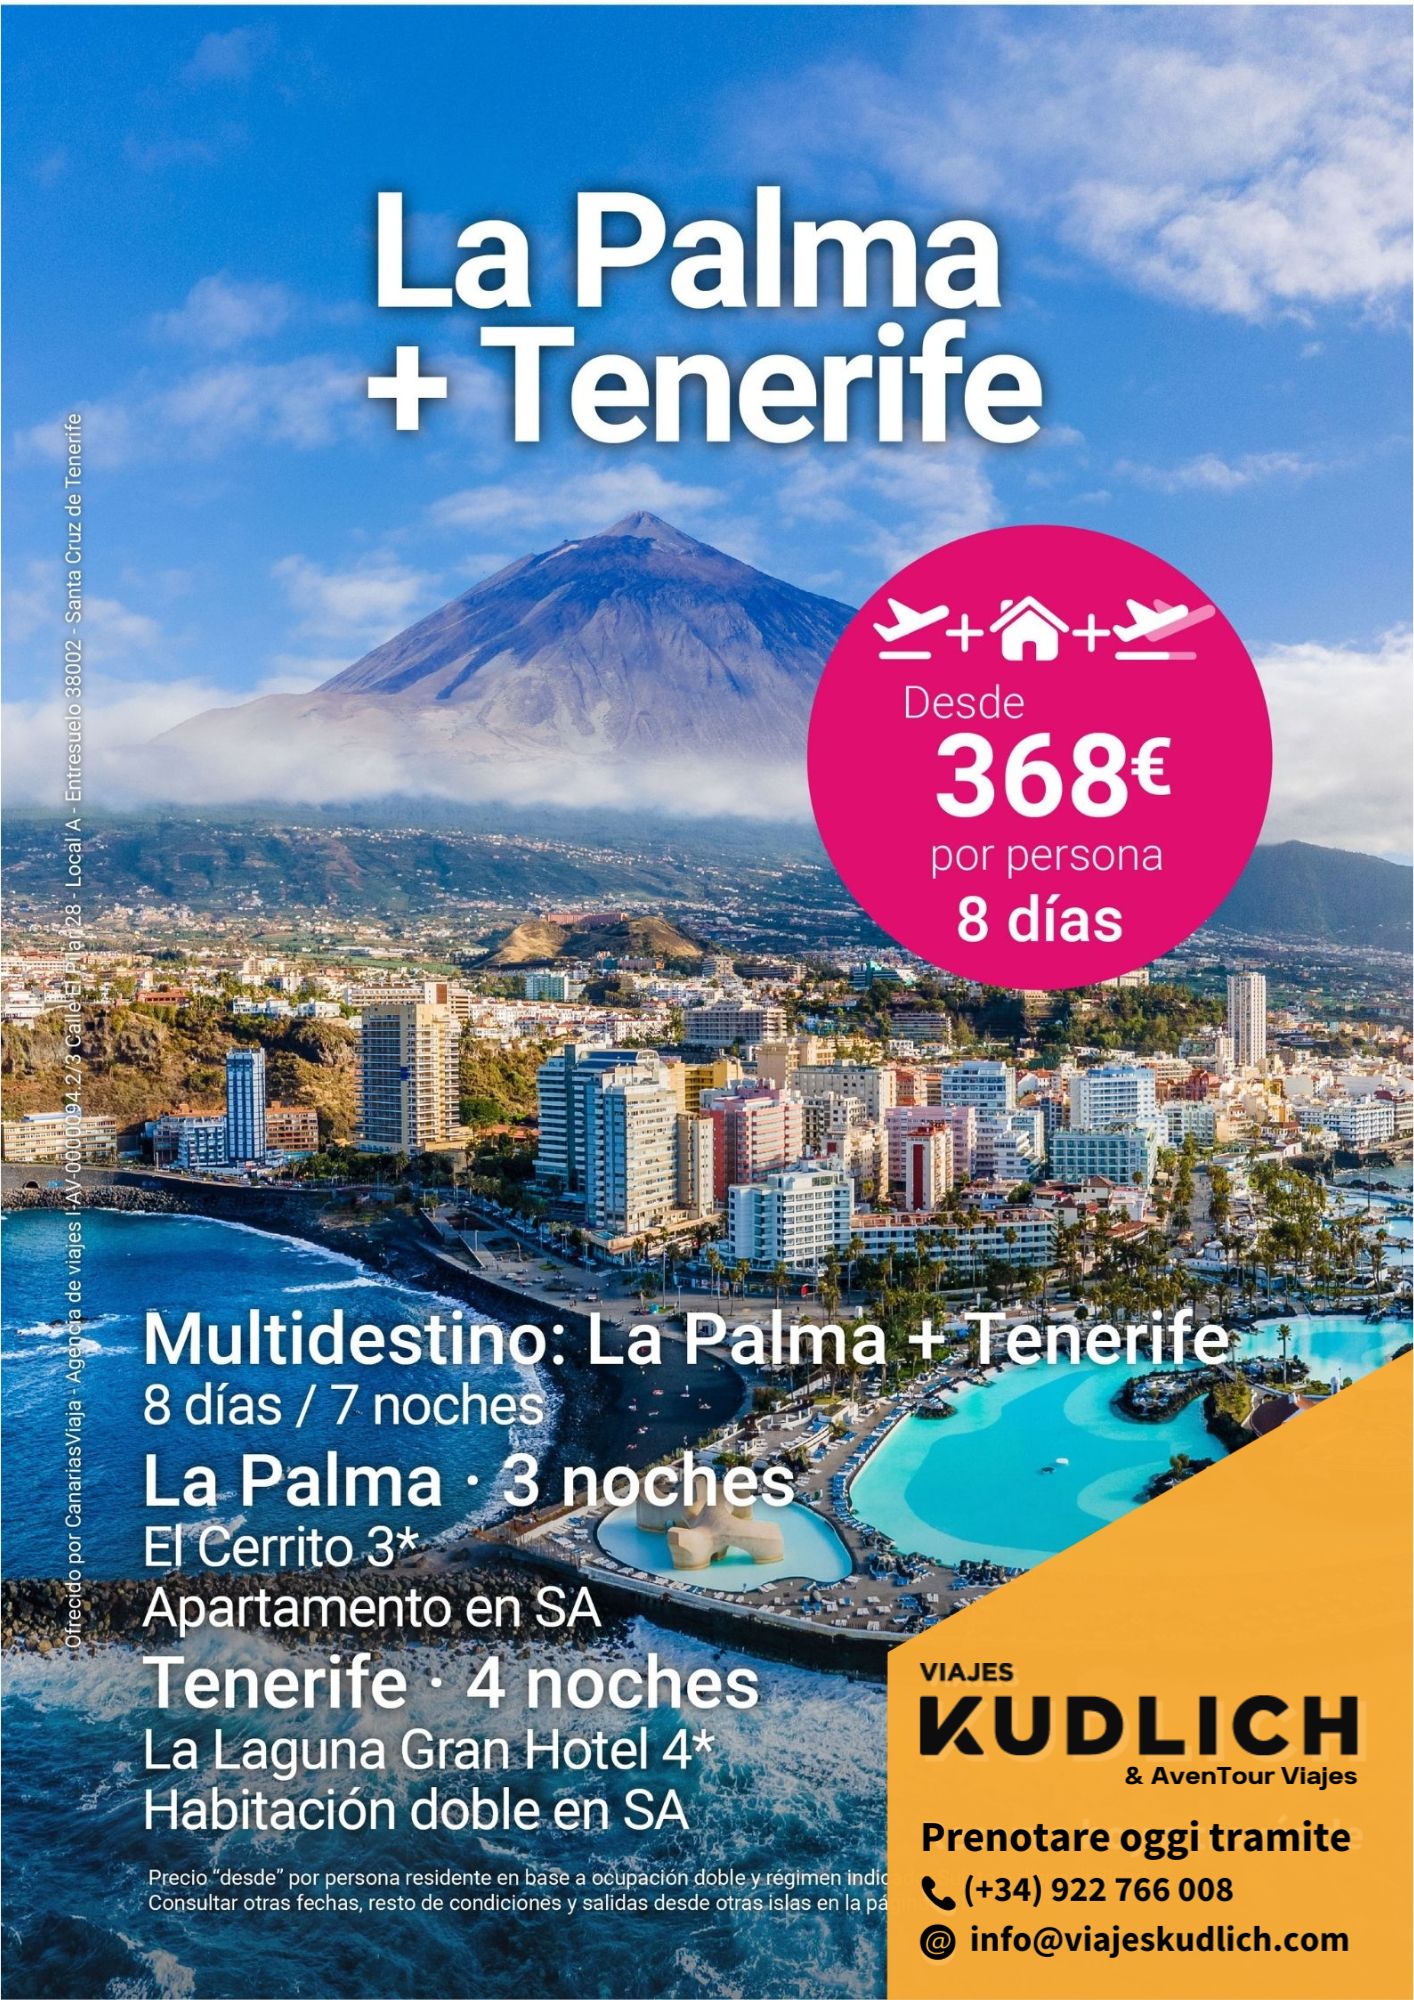 Offerta di viaggio multi-destinazione: La Palma e Tenerife. 8 giorni / 7 notti. da € 368 a persona.